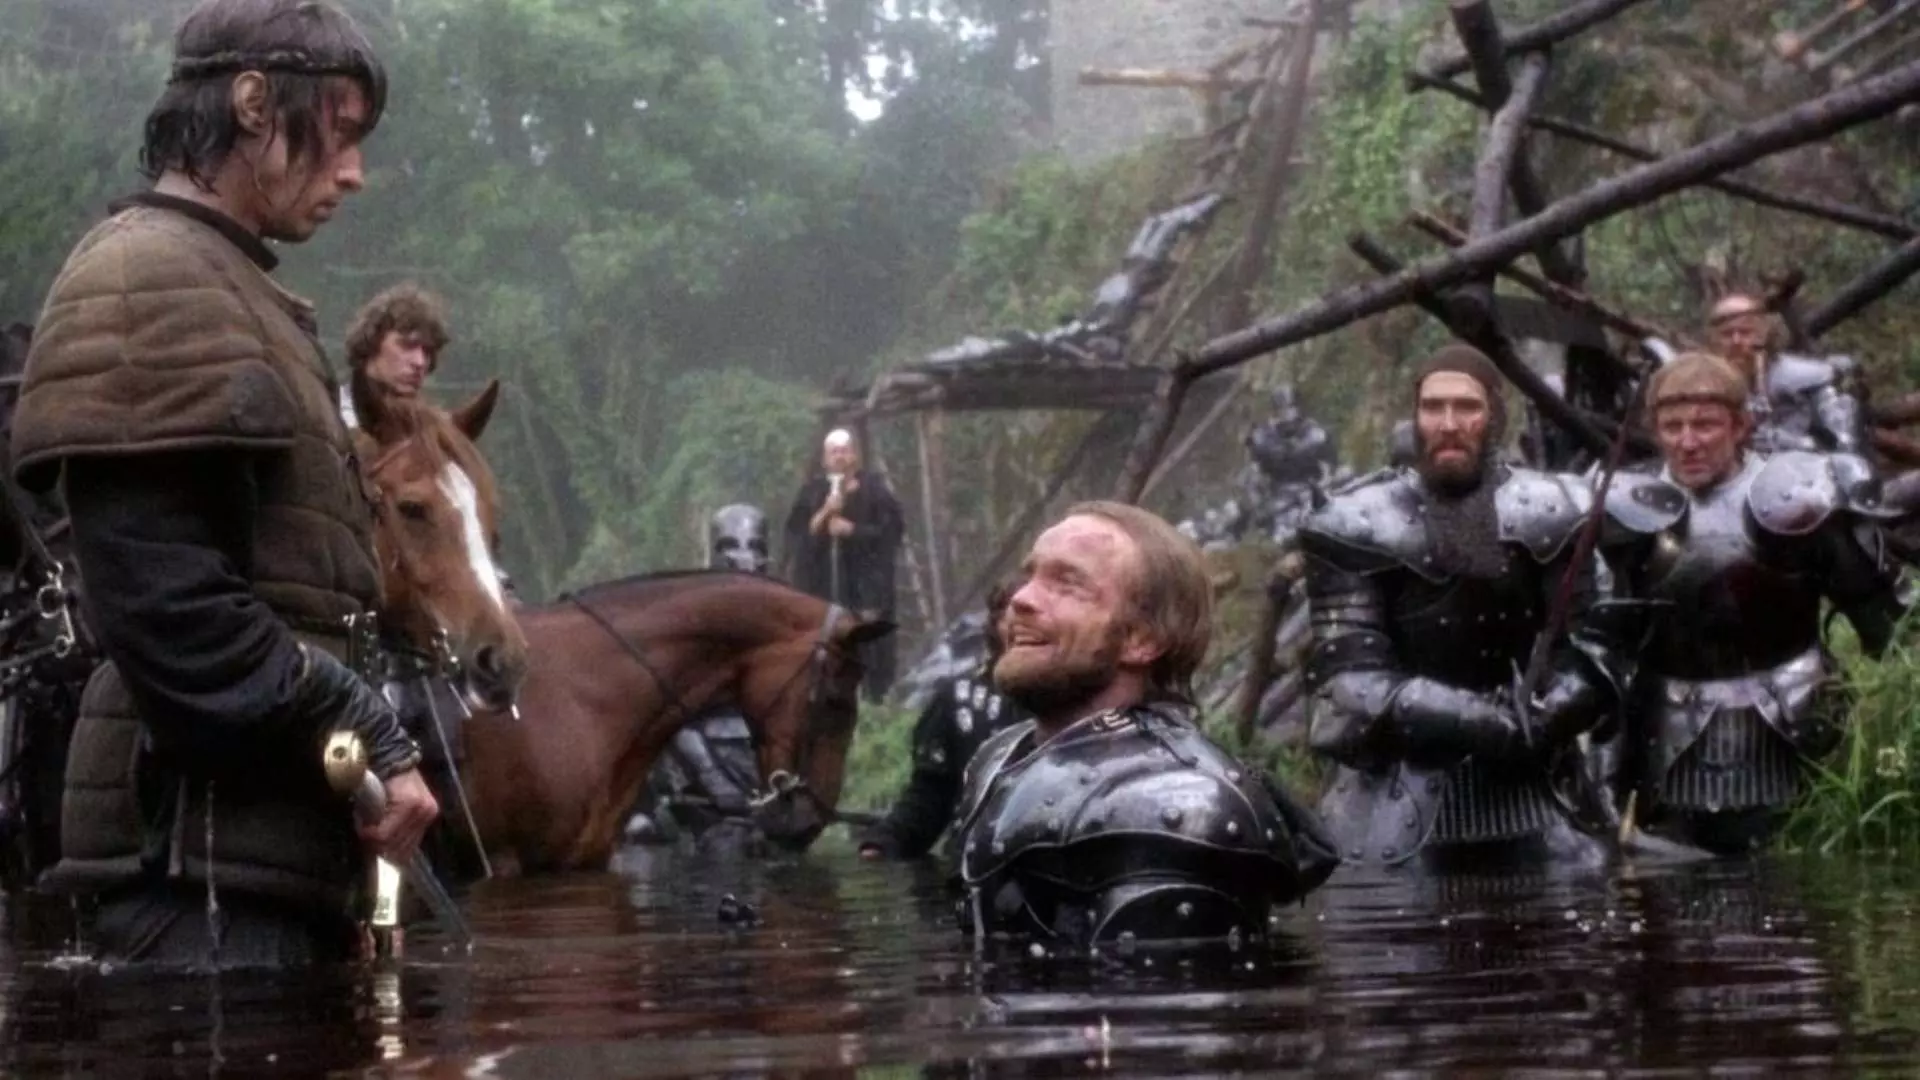 سربازانی با زره مخصوص در آب مقابل نایجل تری در فیلم Excalibur